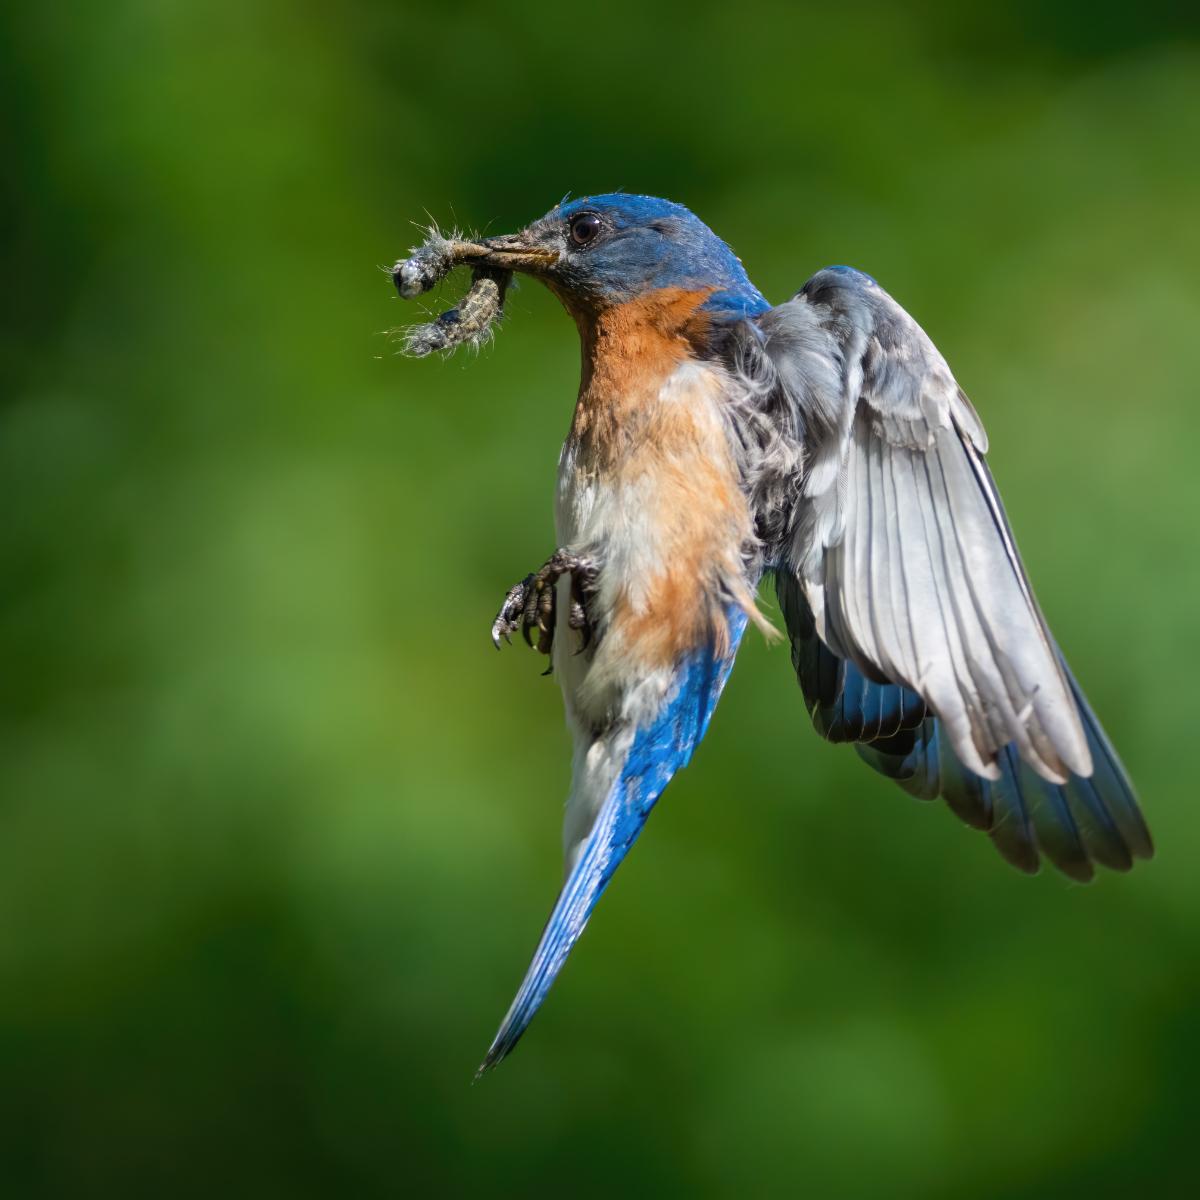 A bluebird flying away with a caterpillar pest